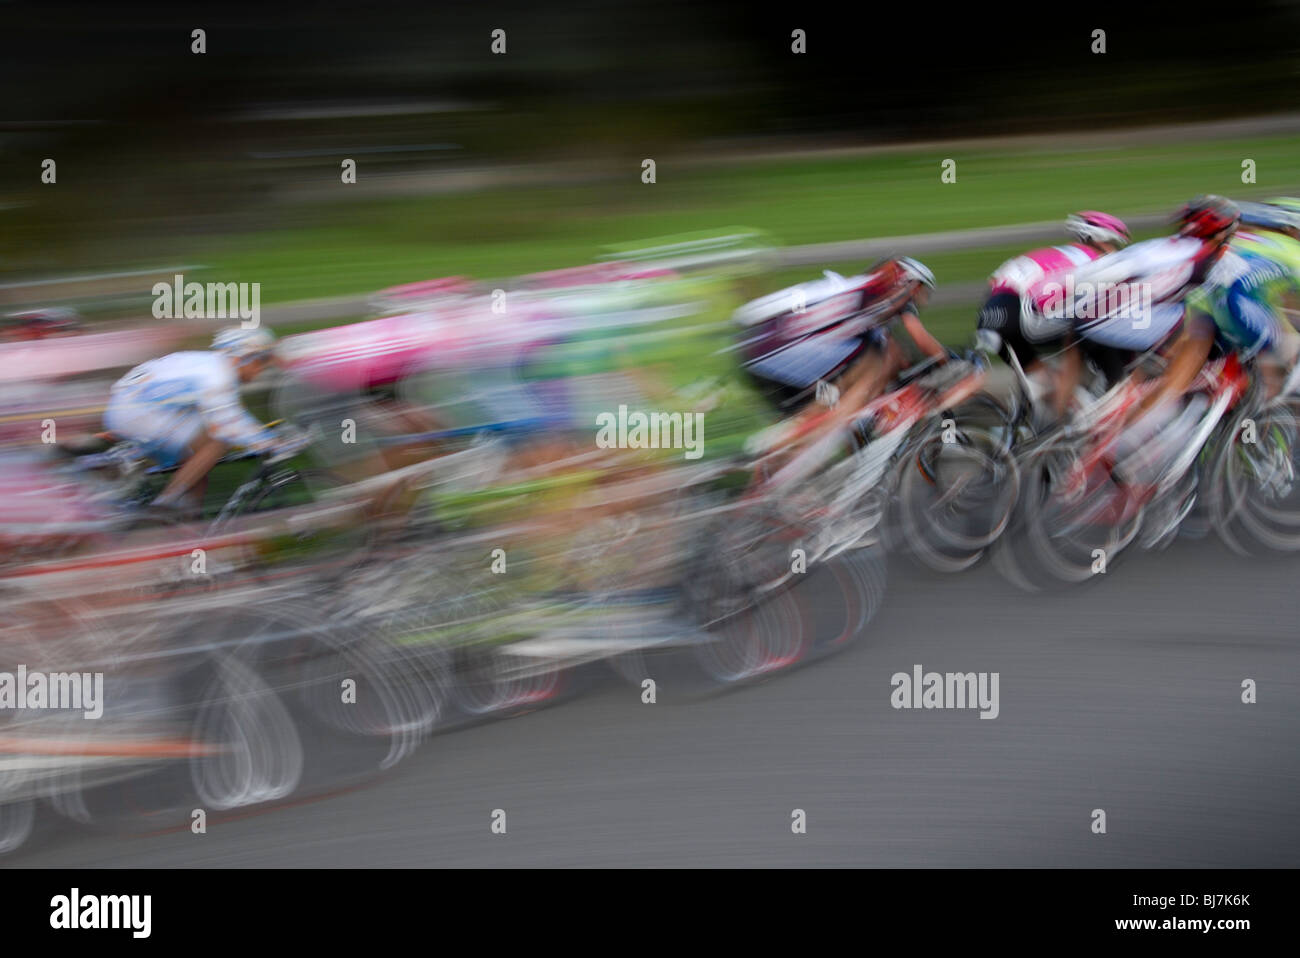 Un groupe de cyclistes en vitesse dans un flou dans une course. Banque D'Images